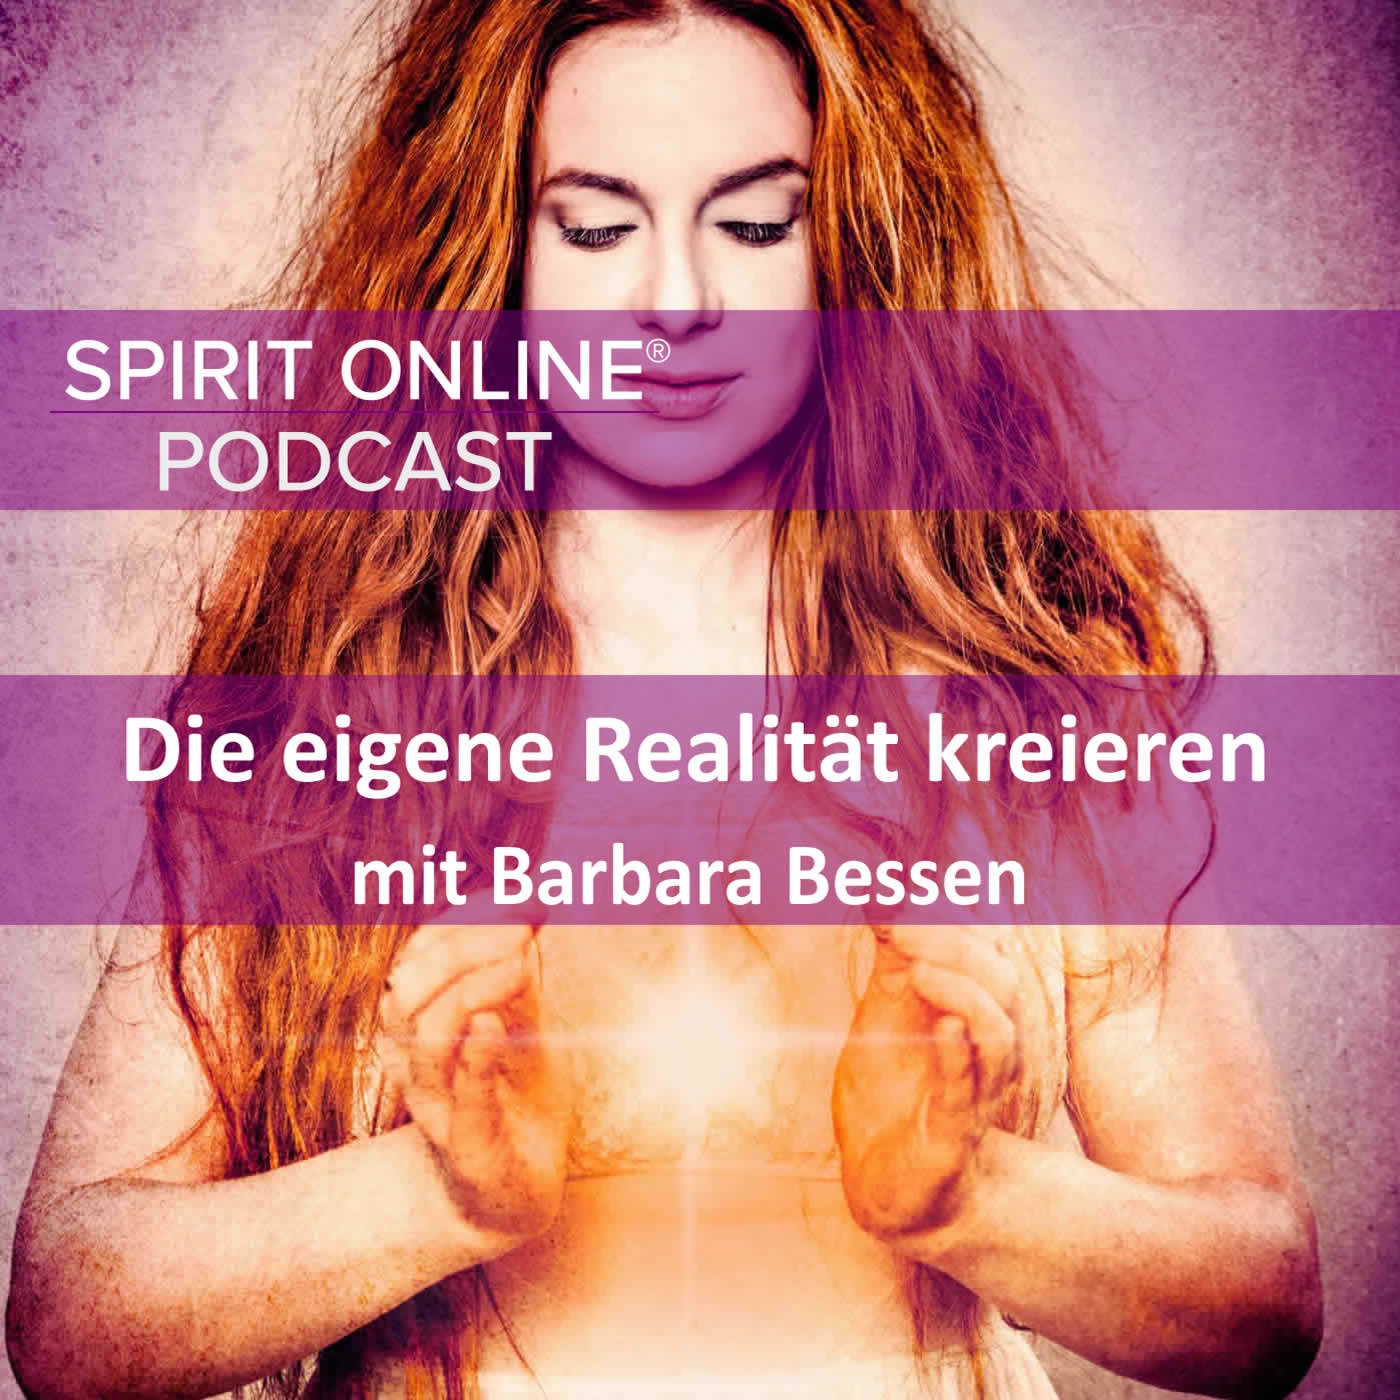 Mit dem Göttlichen die eigene Realität kreieren Podcast mit Barbara Bessen